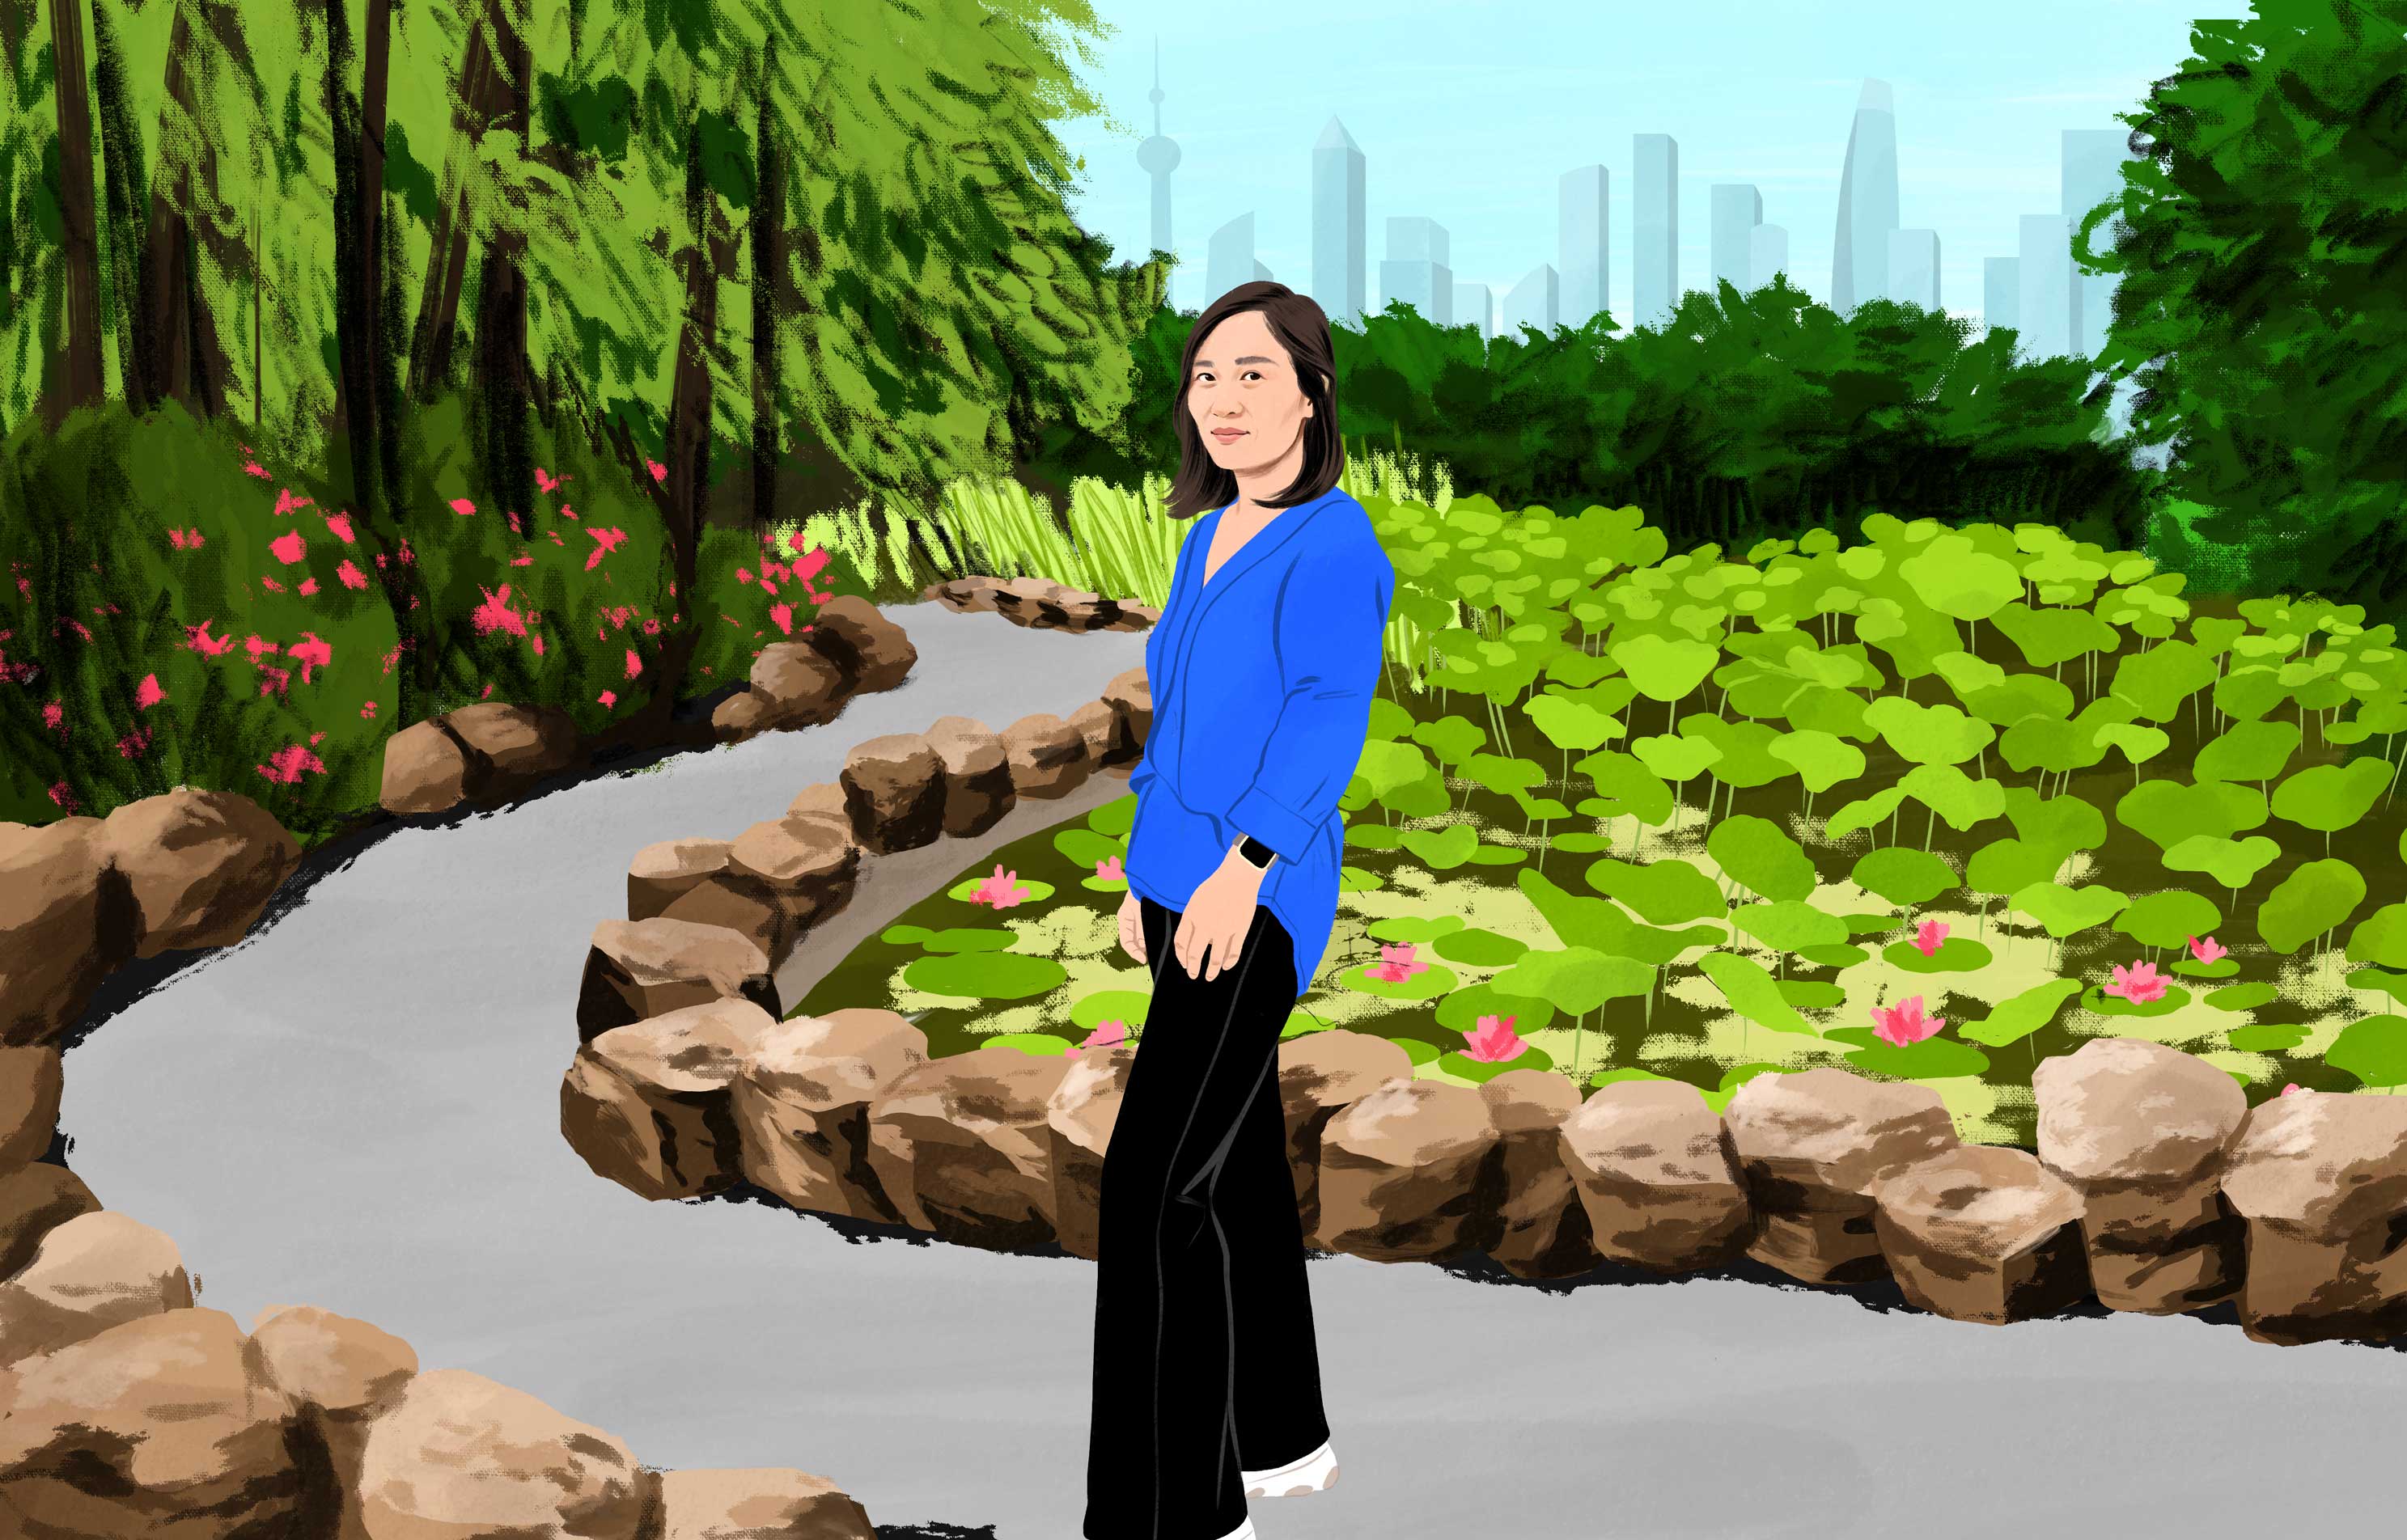 Xu uśmiecha się, spacerując przez porośnięty bujną zielenią park miejski. W oddali widać wieżowce. 